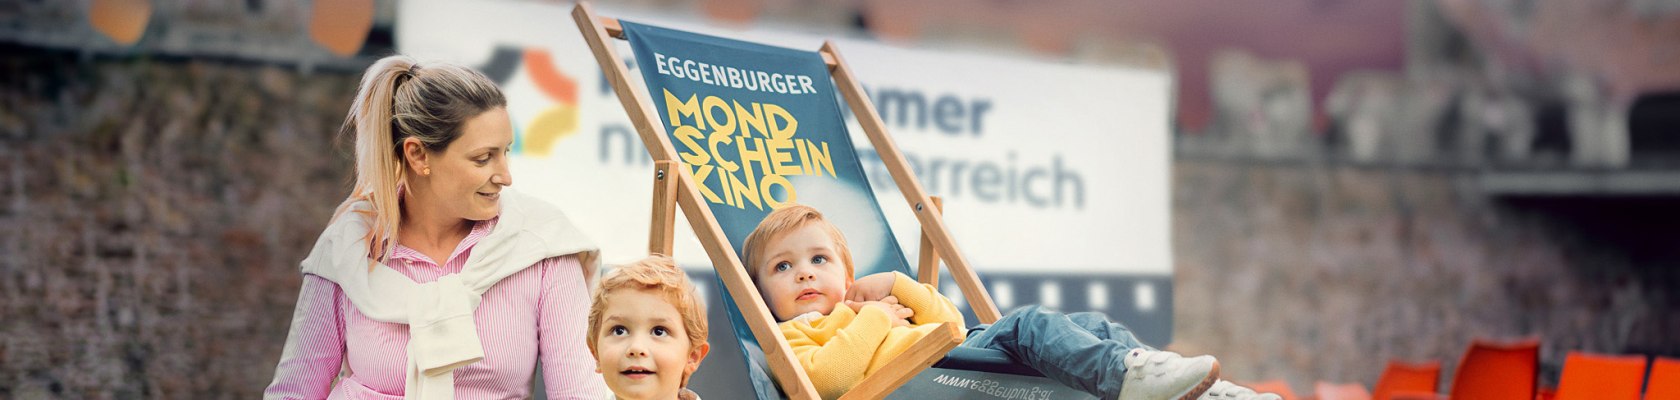 Mondscheinkino Eggenburg, © M. Sommer